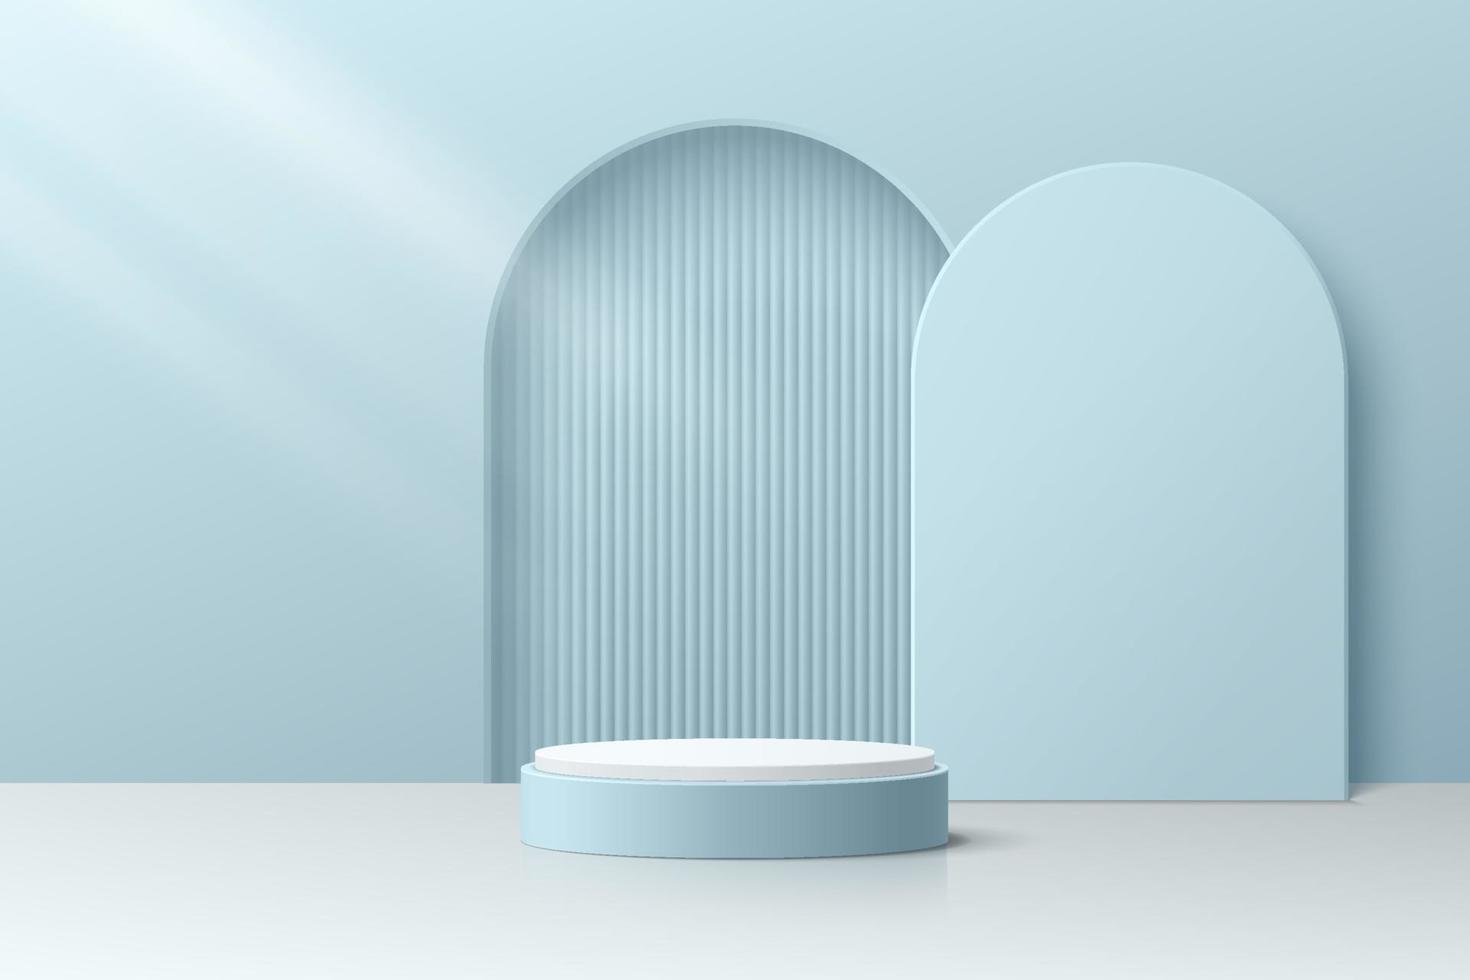 salle 3d abstraite avec podium de piédestal de cylindre bleu réaliste et rayures verticales dans la porte en forme d'arche. scène minimale pour la présentation de l'affichage du produit. conception de plate-forme géométrique vectorielle. vitrine de scène. vecteur